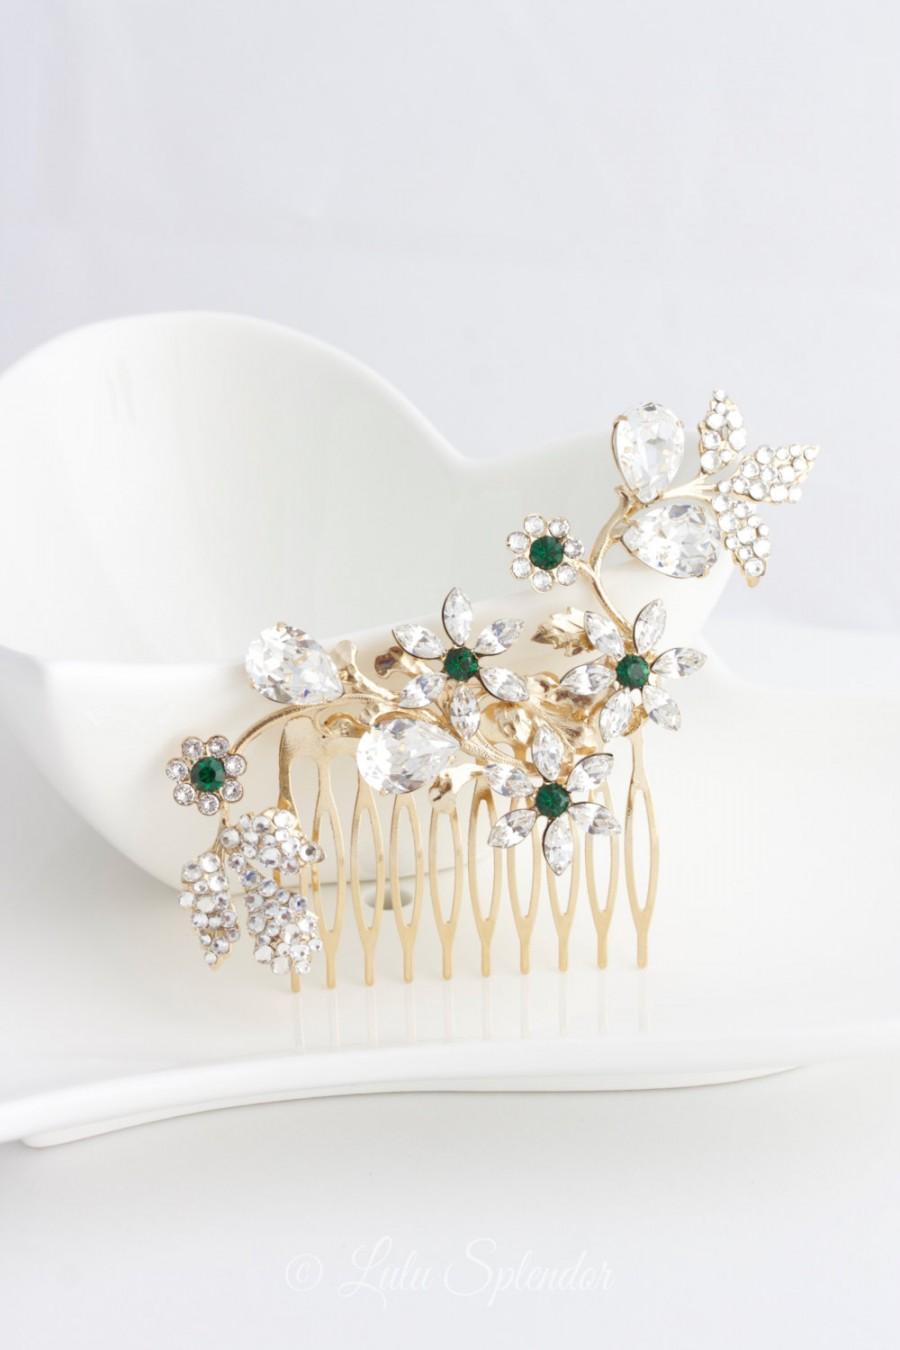 Mariage - Crystal Flower Hair Comb Emerald Green Swarovski Crystal  Bridal Rhinestone Hair Comb Gold Wedding Hair Accessory  AUBURY